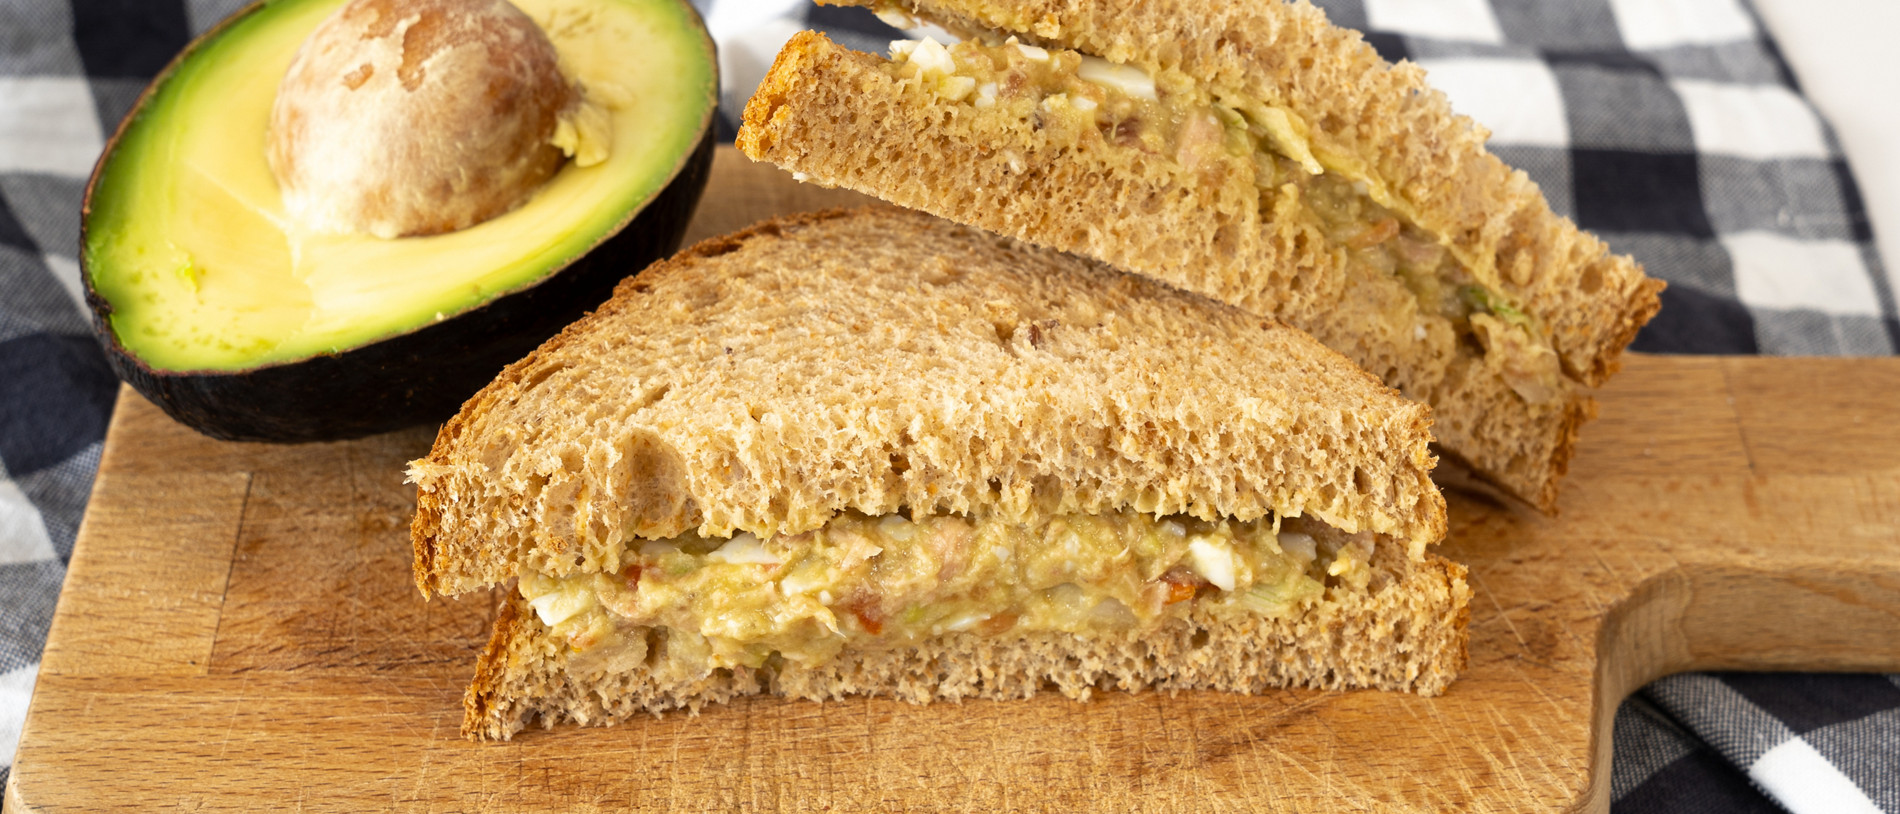 Sandwich guacamole